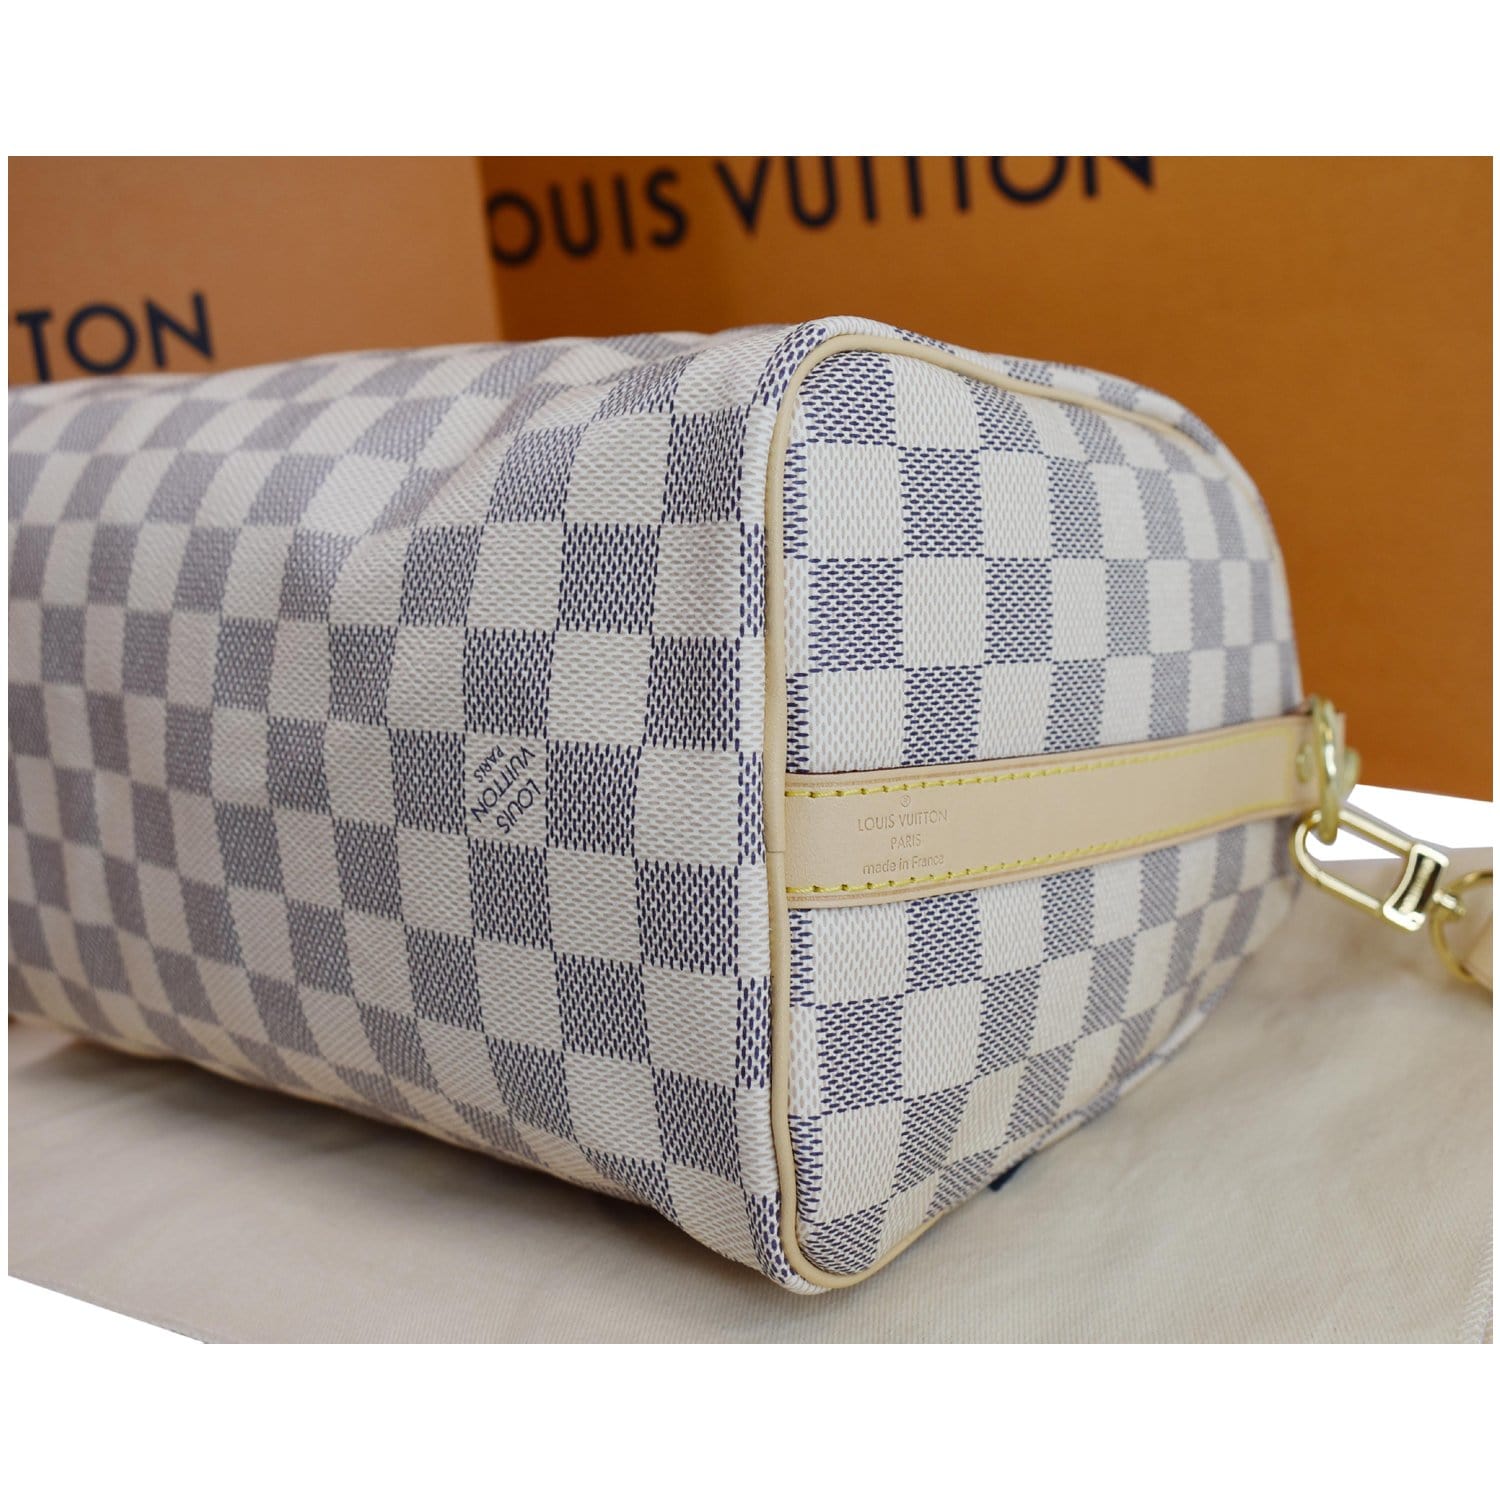 ❌SOLD❌ Excellent Condition Louis Vuitton LV Speedy 25 in Damier Azur GHW